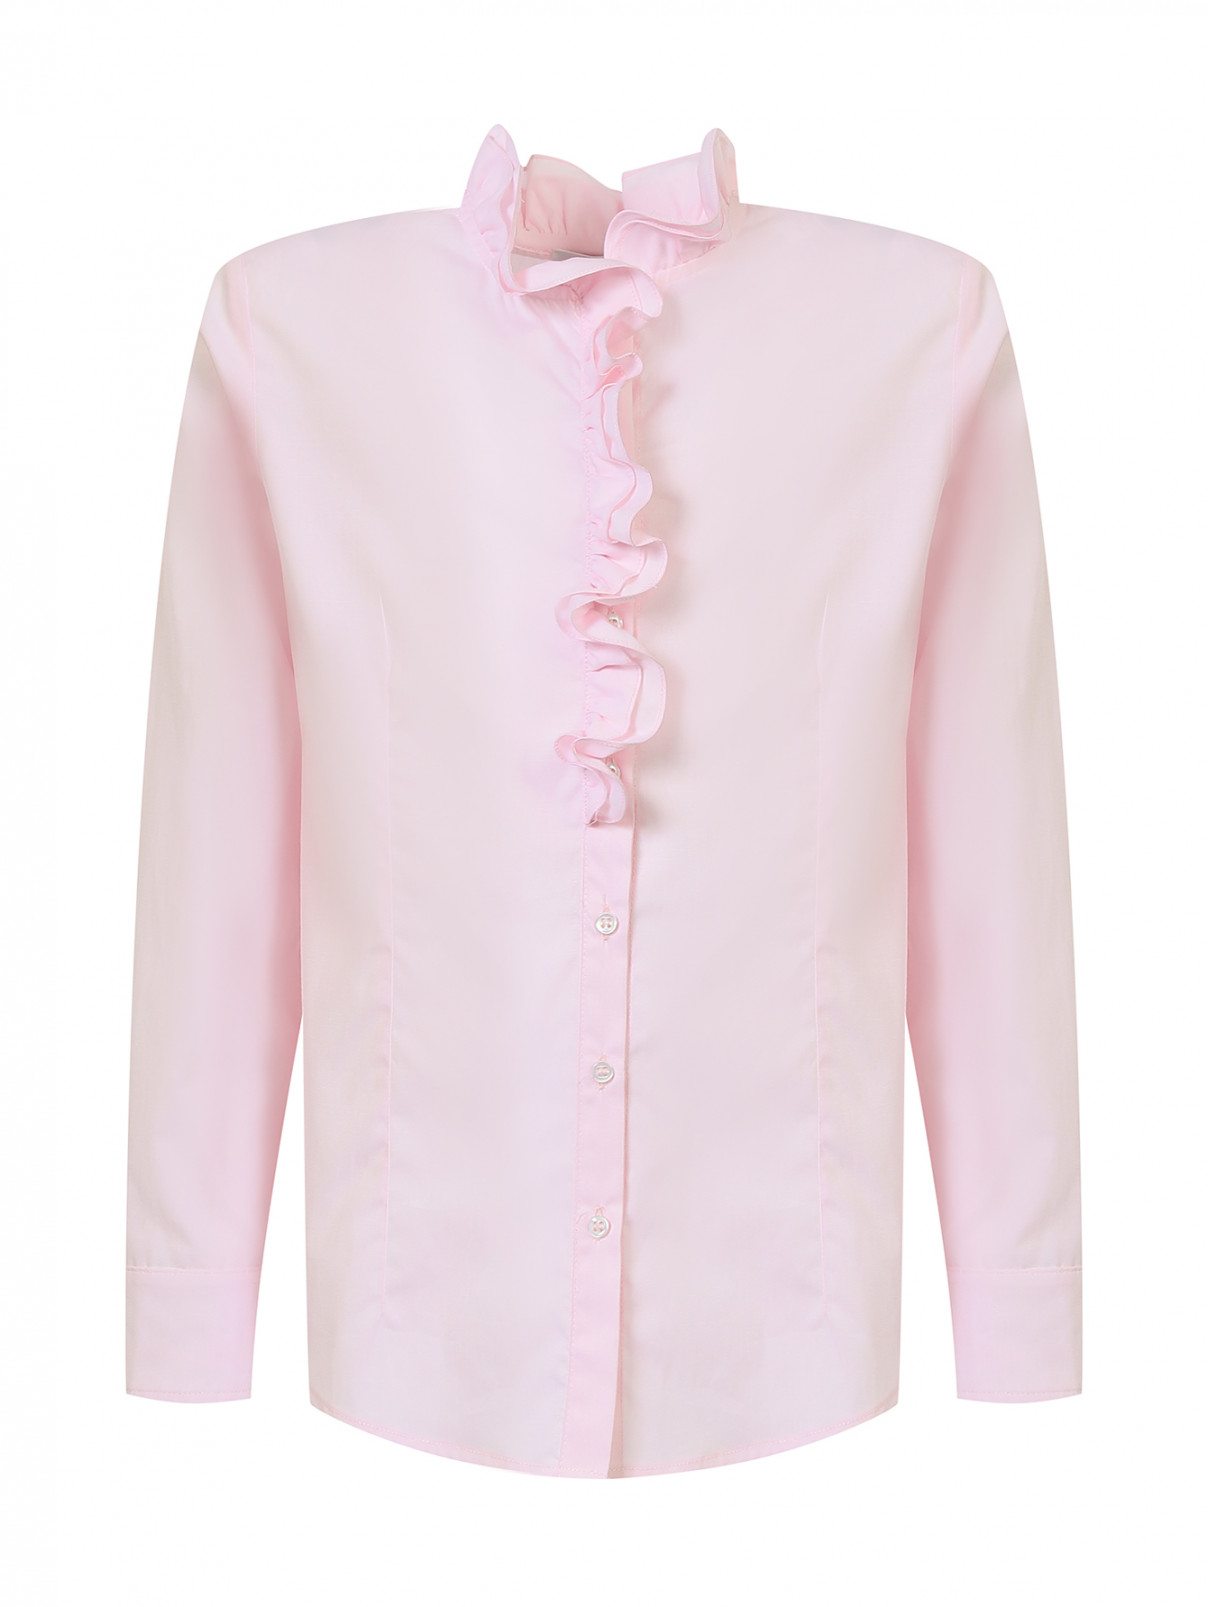 Хлопковая блуза с оборками Aletta Couture  –  Общий вид  – Цвет:  Розовый